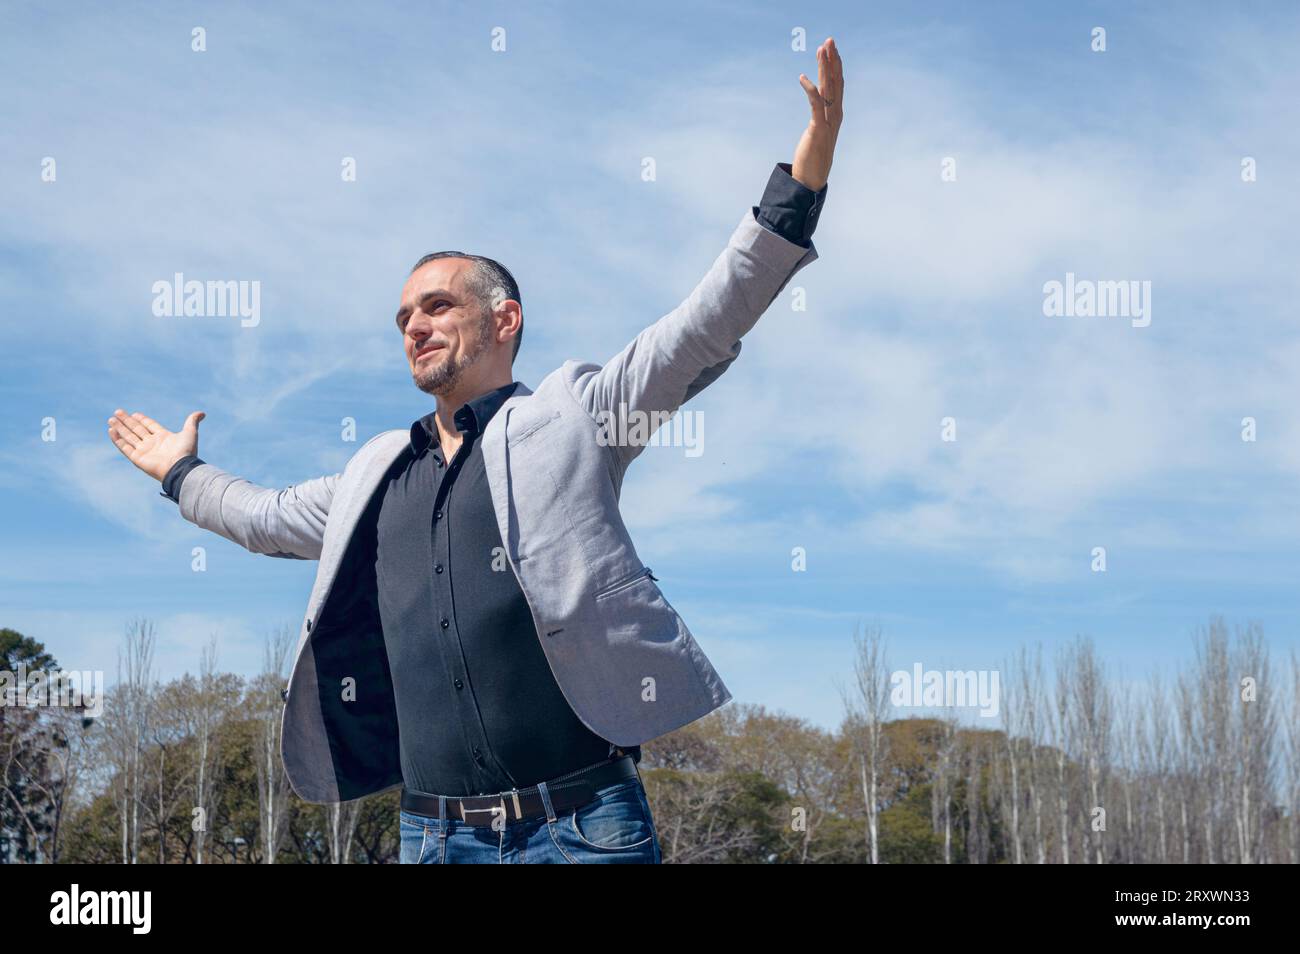 homme d'affaires caucasien français avec barbe et vêtements élégants, heureux gagnant célébrant ses gains financiers debout à l'extérieur à bras ouverts, espace de copie Banque D'Images